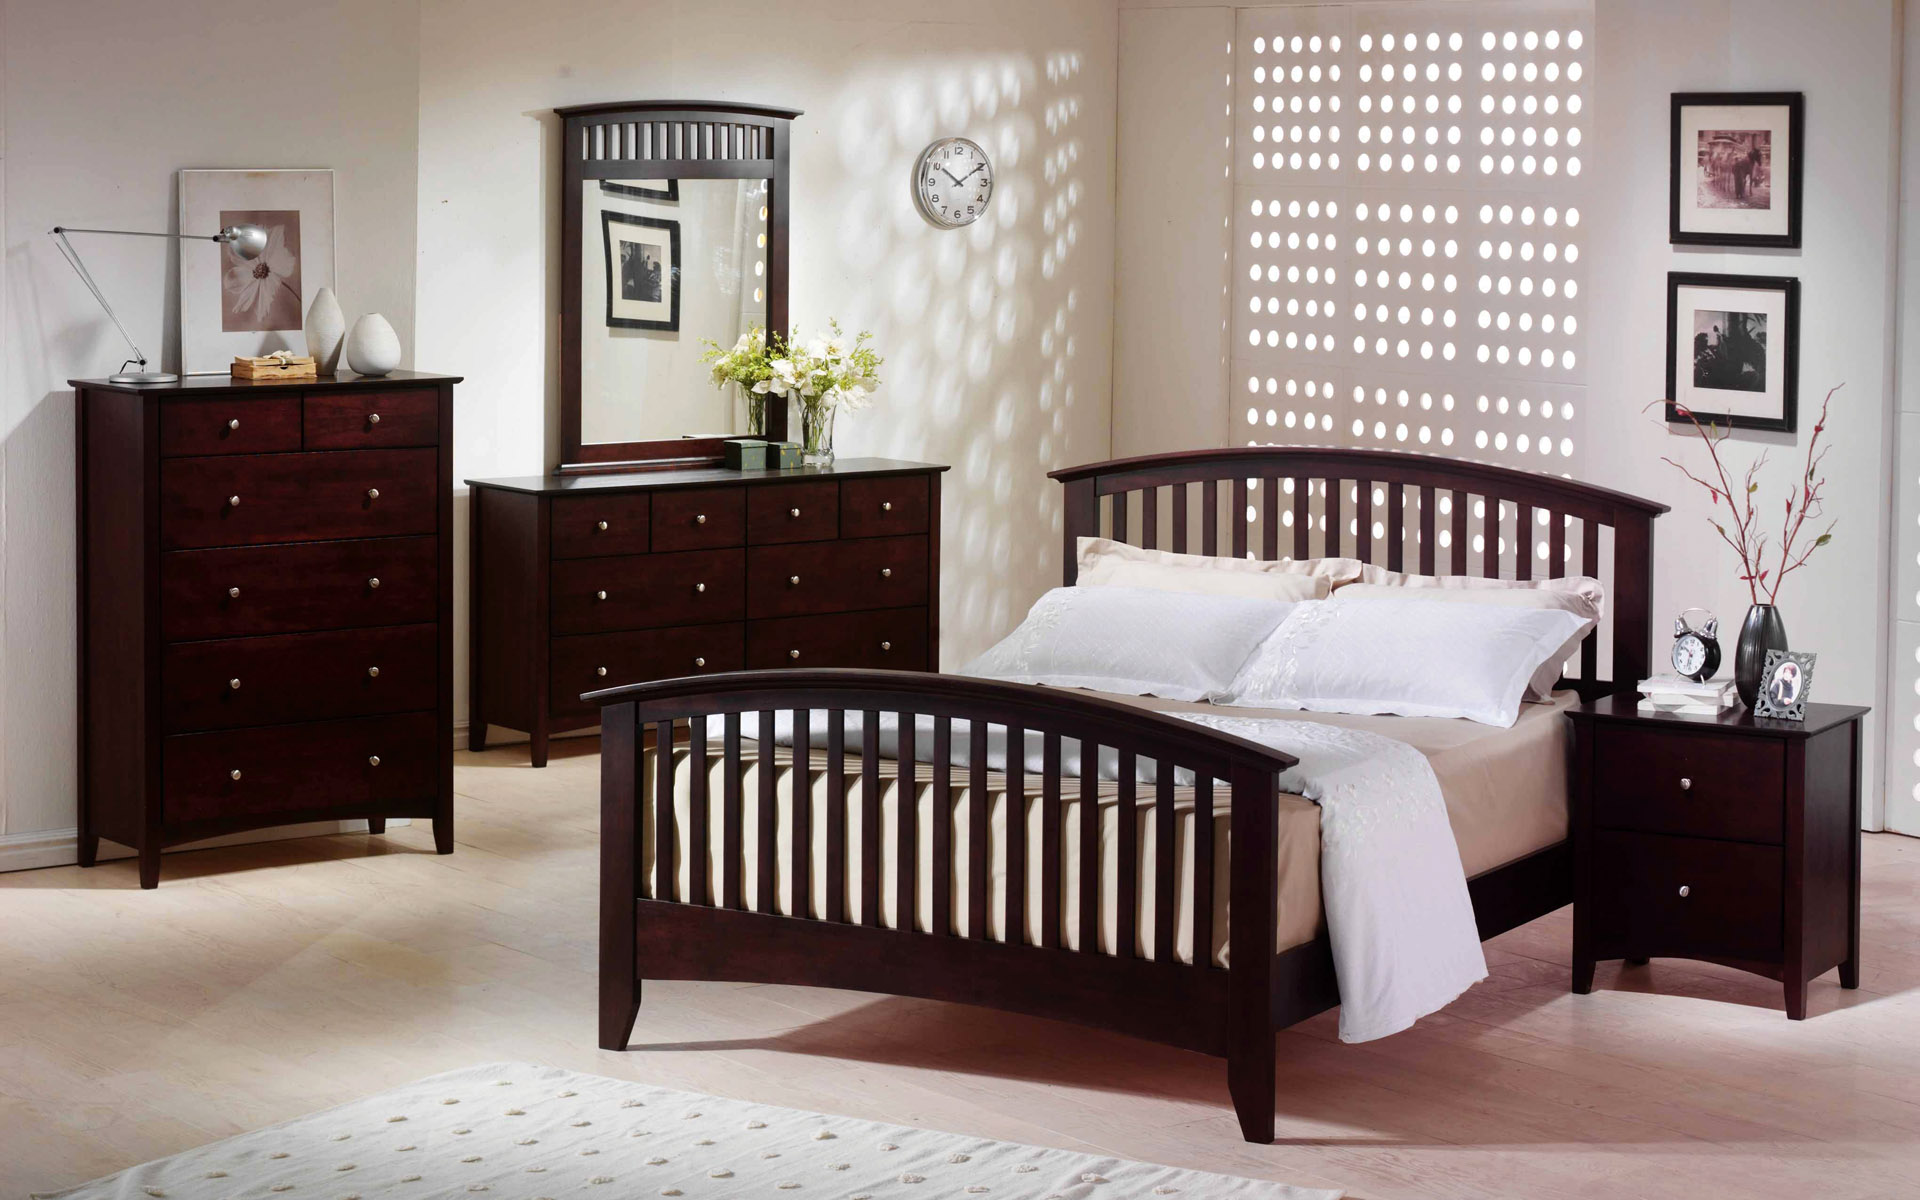 Nên chọn giường ngủ theo phòng thủy có đầu giường làm bằng gỗ hoặc bọc đệm, đảm bảo những giấc ngủ ngon cho gia chủ mỗi ngày